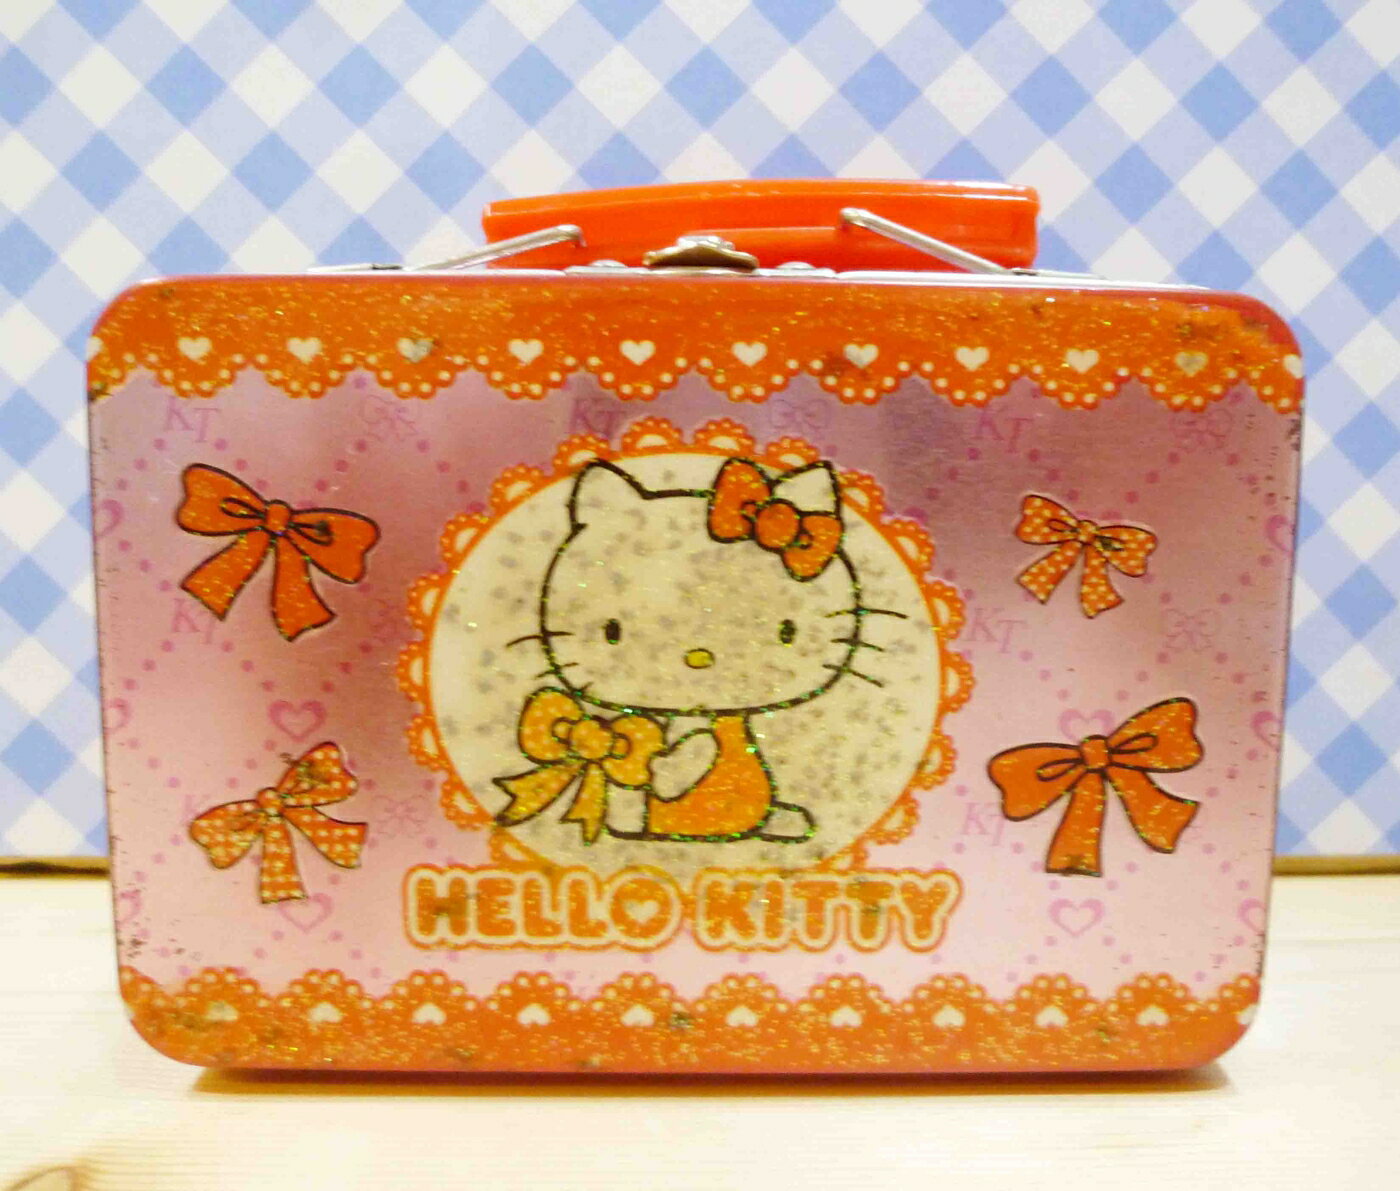 【震撼精品百貨】Hello Kitty 凱蒂貓 HELO KITTY鐵盒-手提鐵盒-粉蝴蝶結 震撼日式精品百貨